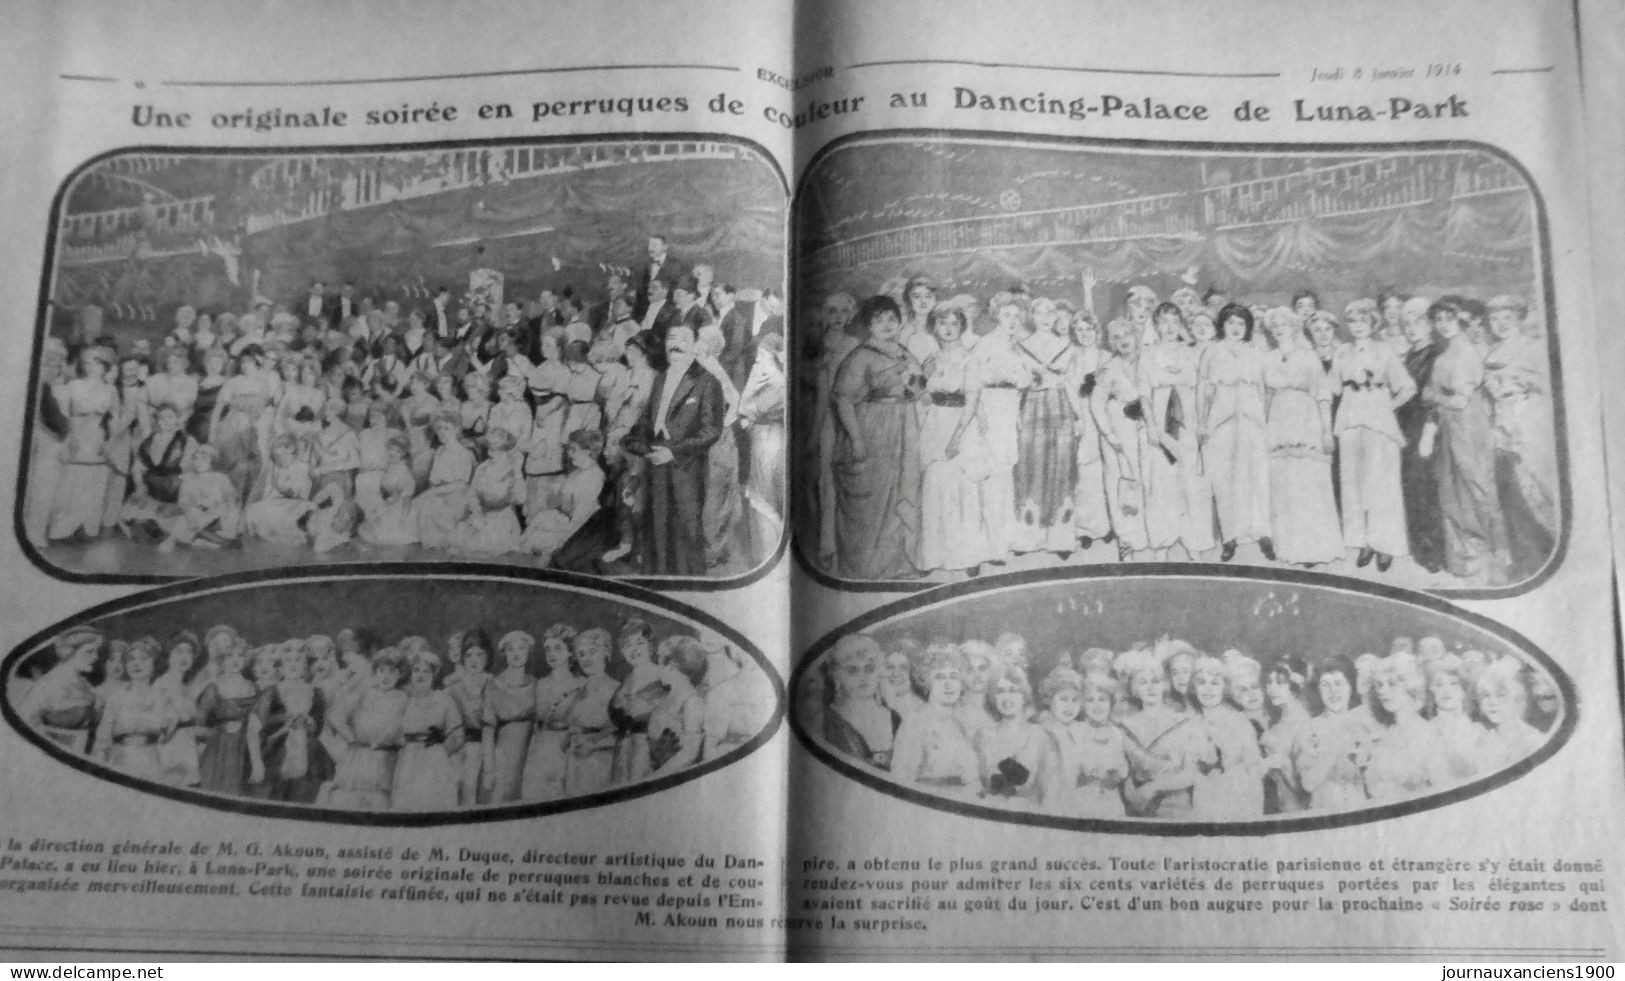 1914 EXCELSIOR ARTICLE DE PRESSE DANCING PALACE AKOUN DUQUE PERRUQUE 1 JOURNAL - Glass Slides